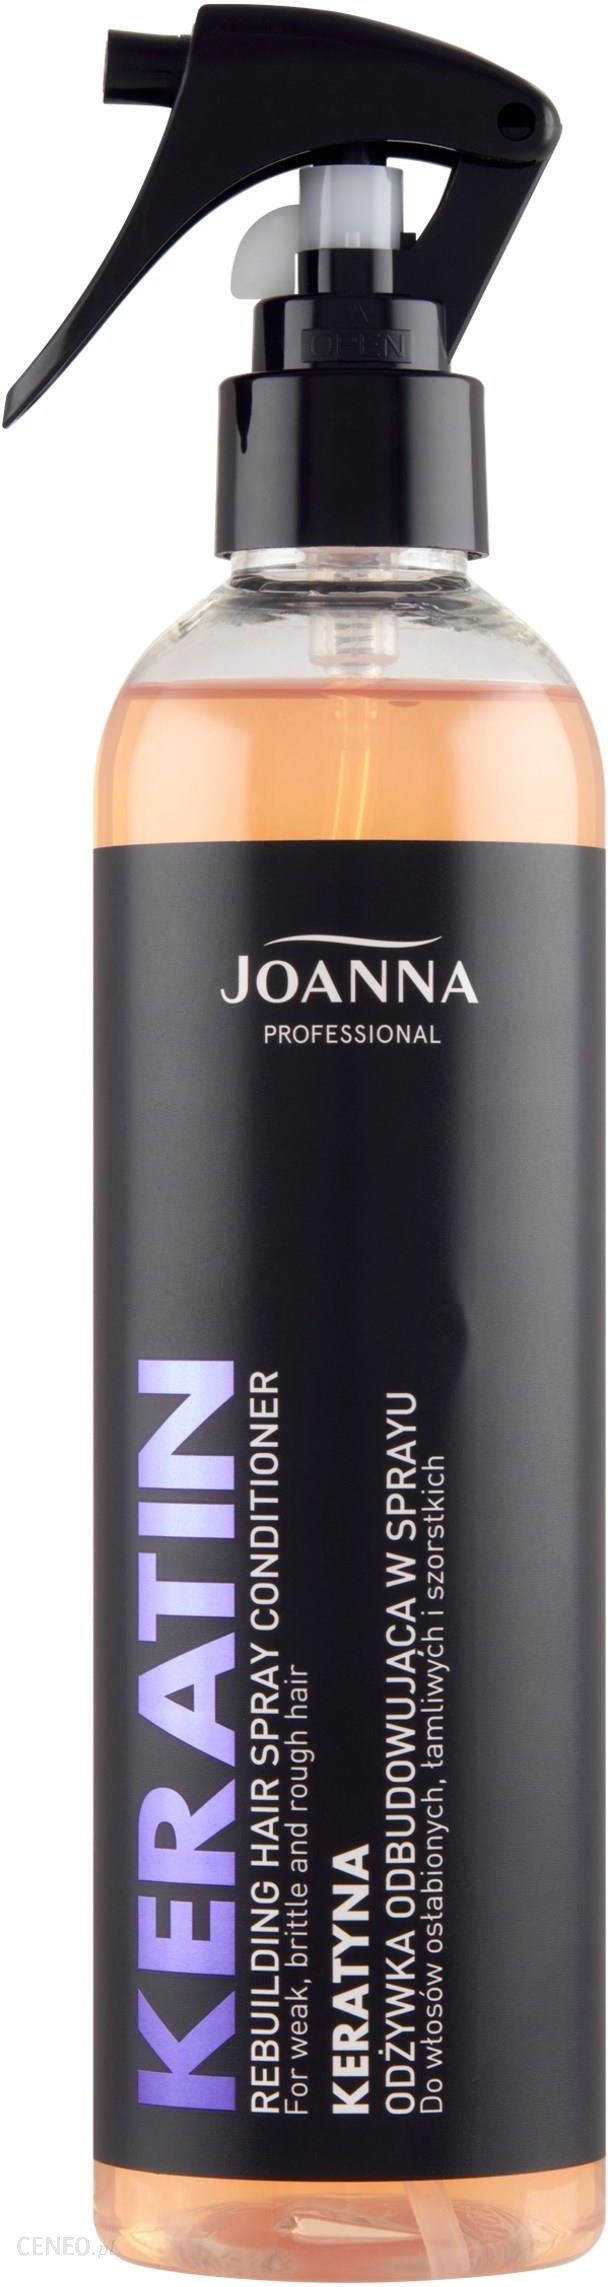 joanna odżywka do włosów 300 ml